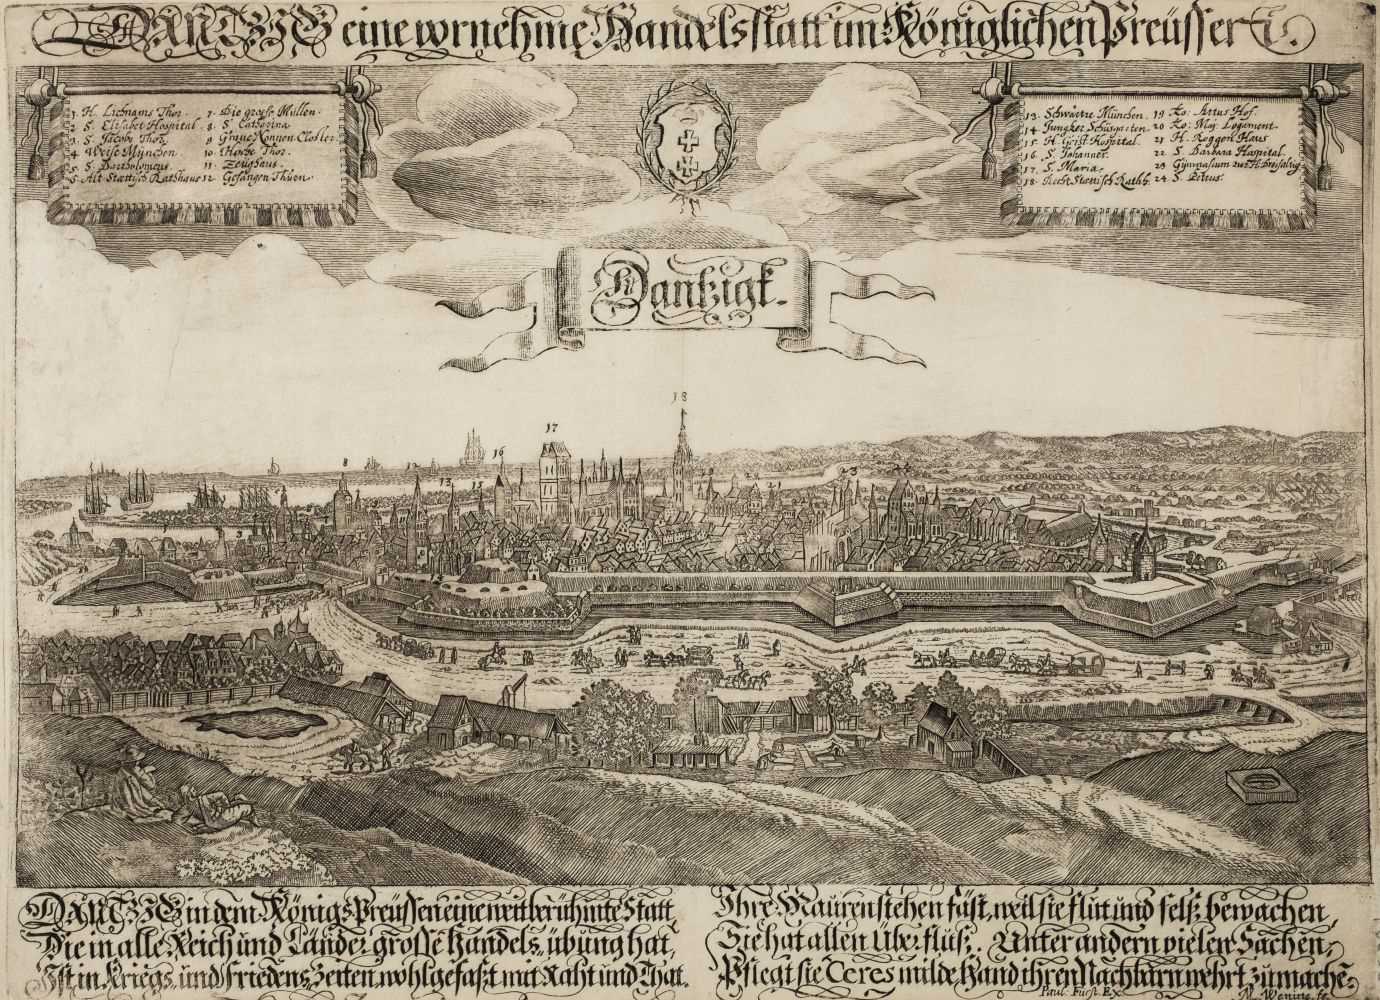 Lot 105 - Danzig. Wening (Michael), Dantzig eine vornehme Handelstatt im Koniglichen Preusseri, circa 1670